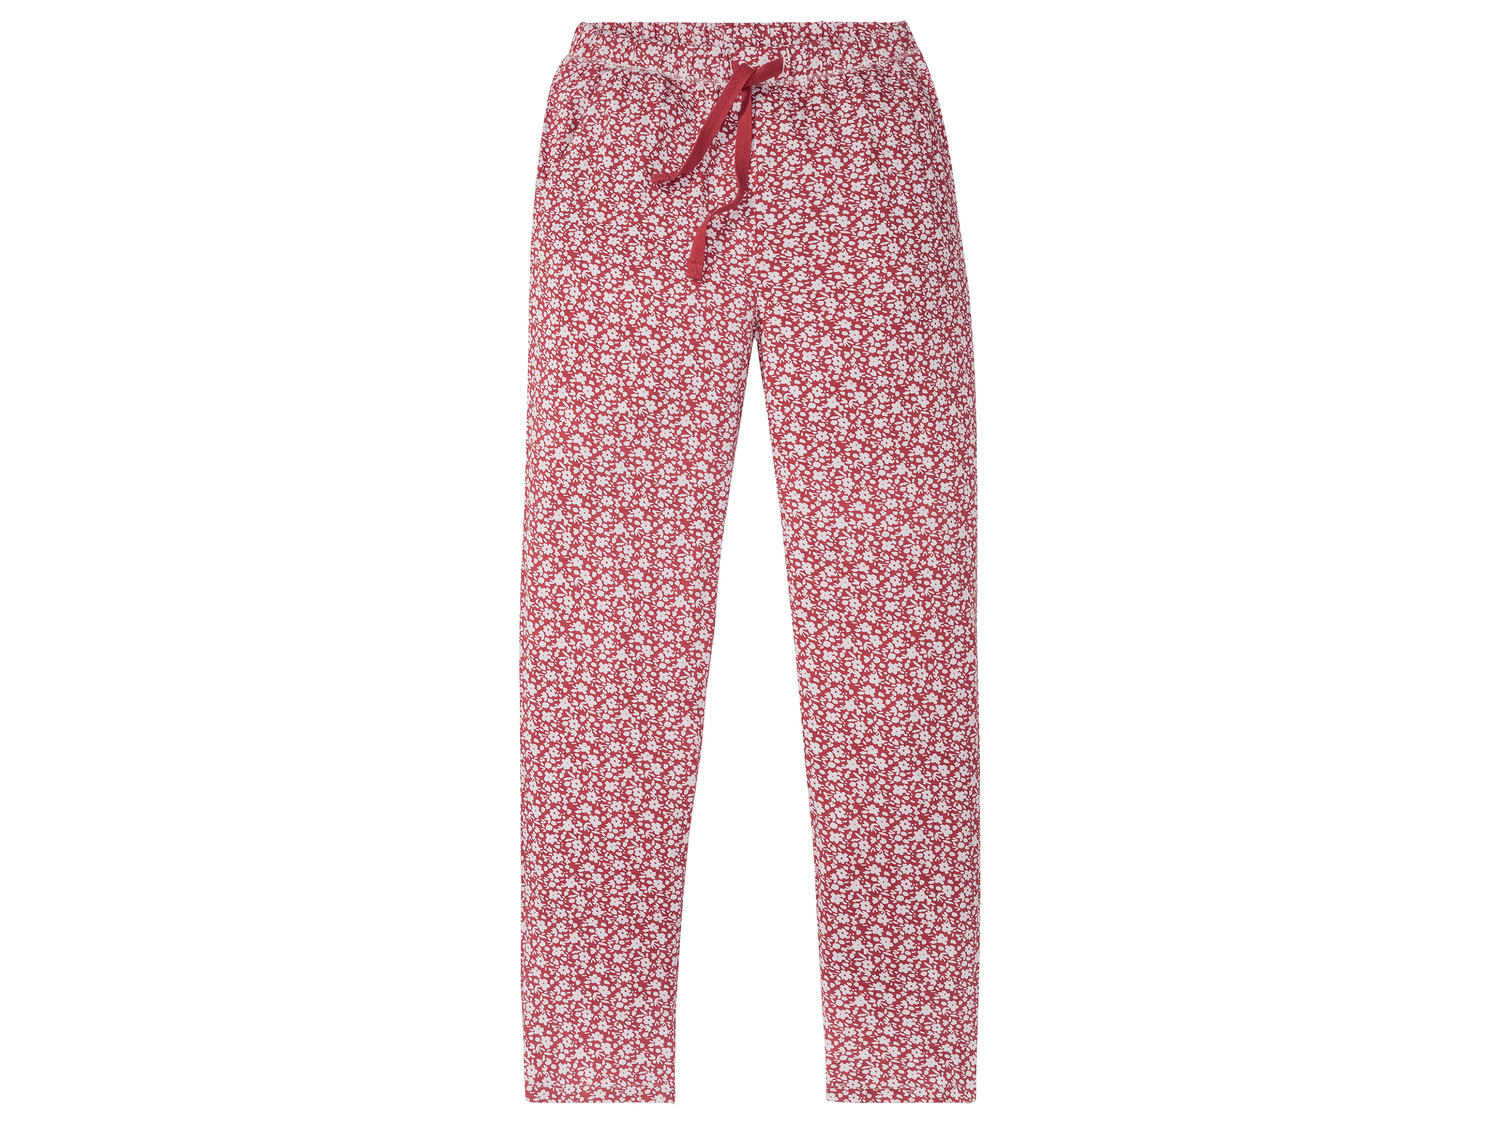 Pyjama femme , le prix 9.99 € 
- Du S au XL selon modèle.
- Ex. 95 % viscose ...